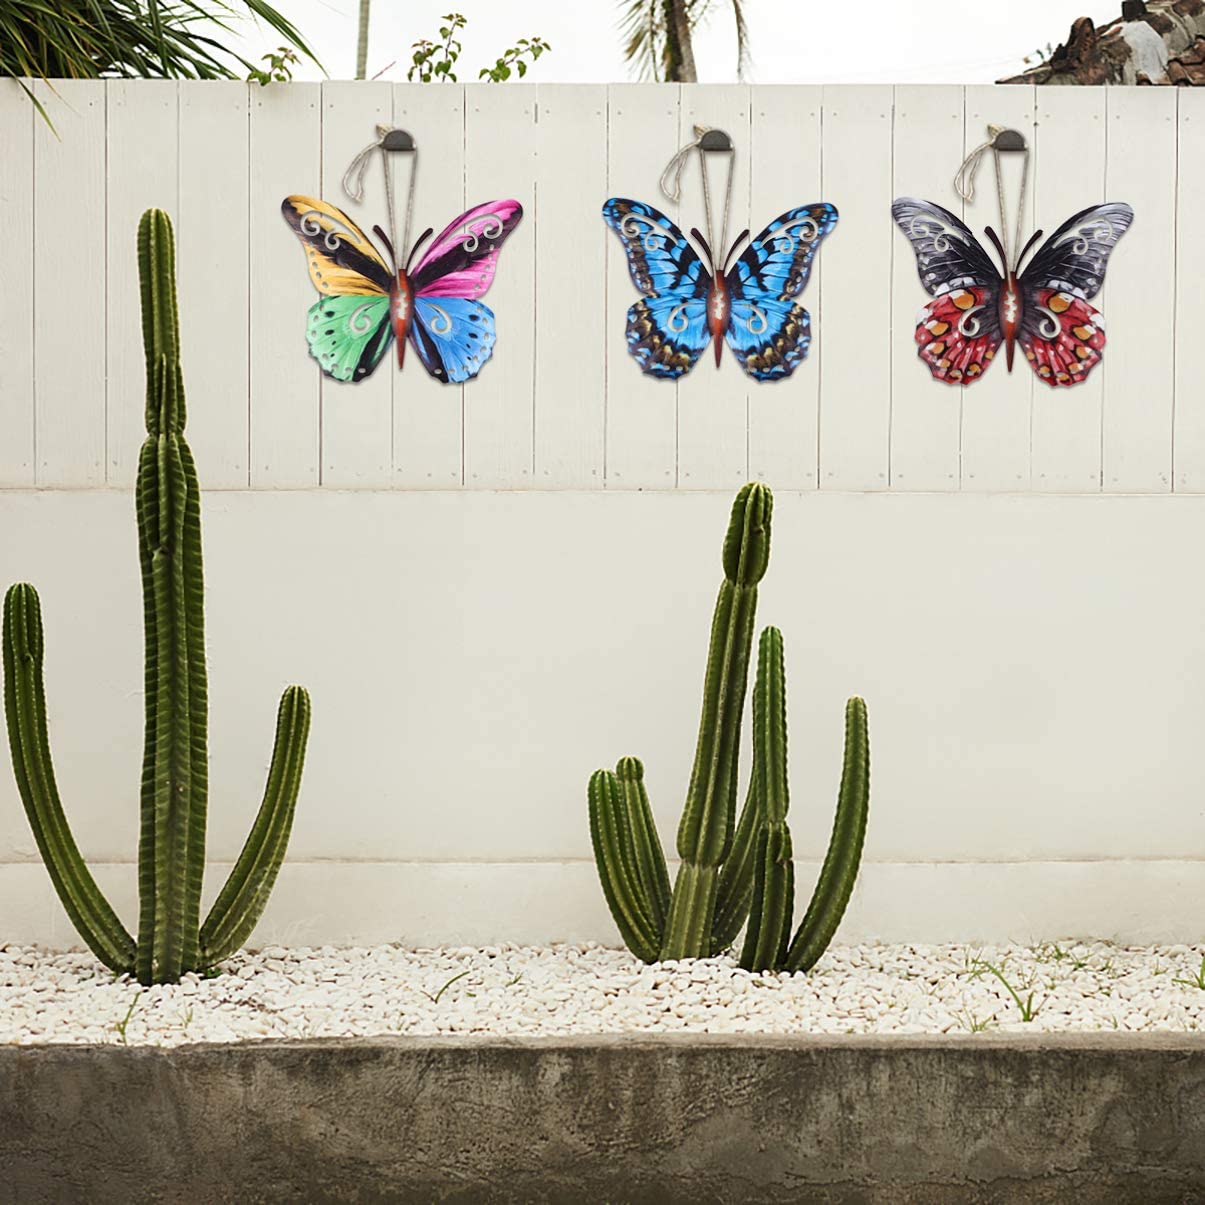 4Pcs Metalen Vlinders Wall Art Sculpturen Tuin Decoratieve Dier Opknoping 3D Vlinder Sticker Voor Indoor Outdoor Garden Home